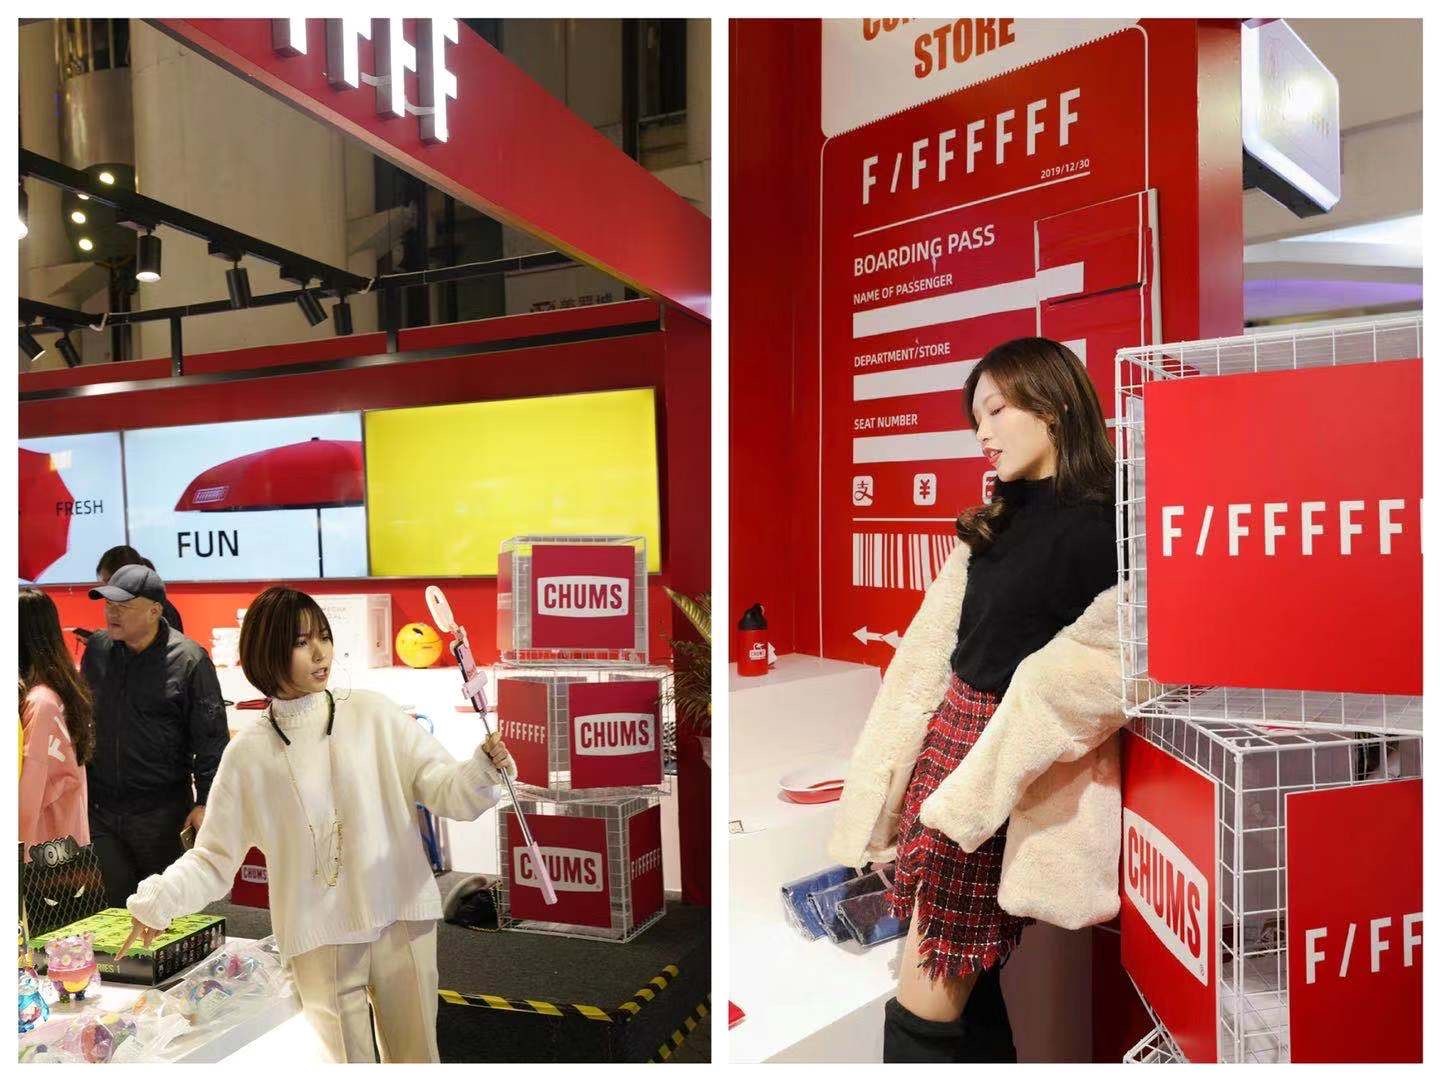 时尚潮流创意化平台F/FFFFFF首店落户上海美罗城